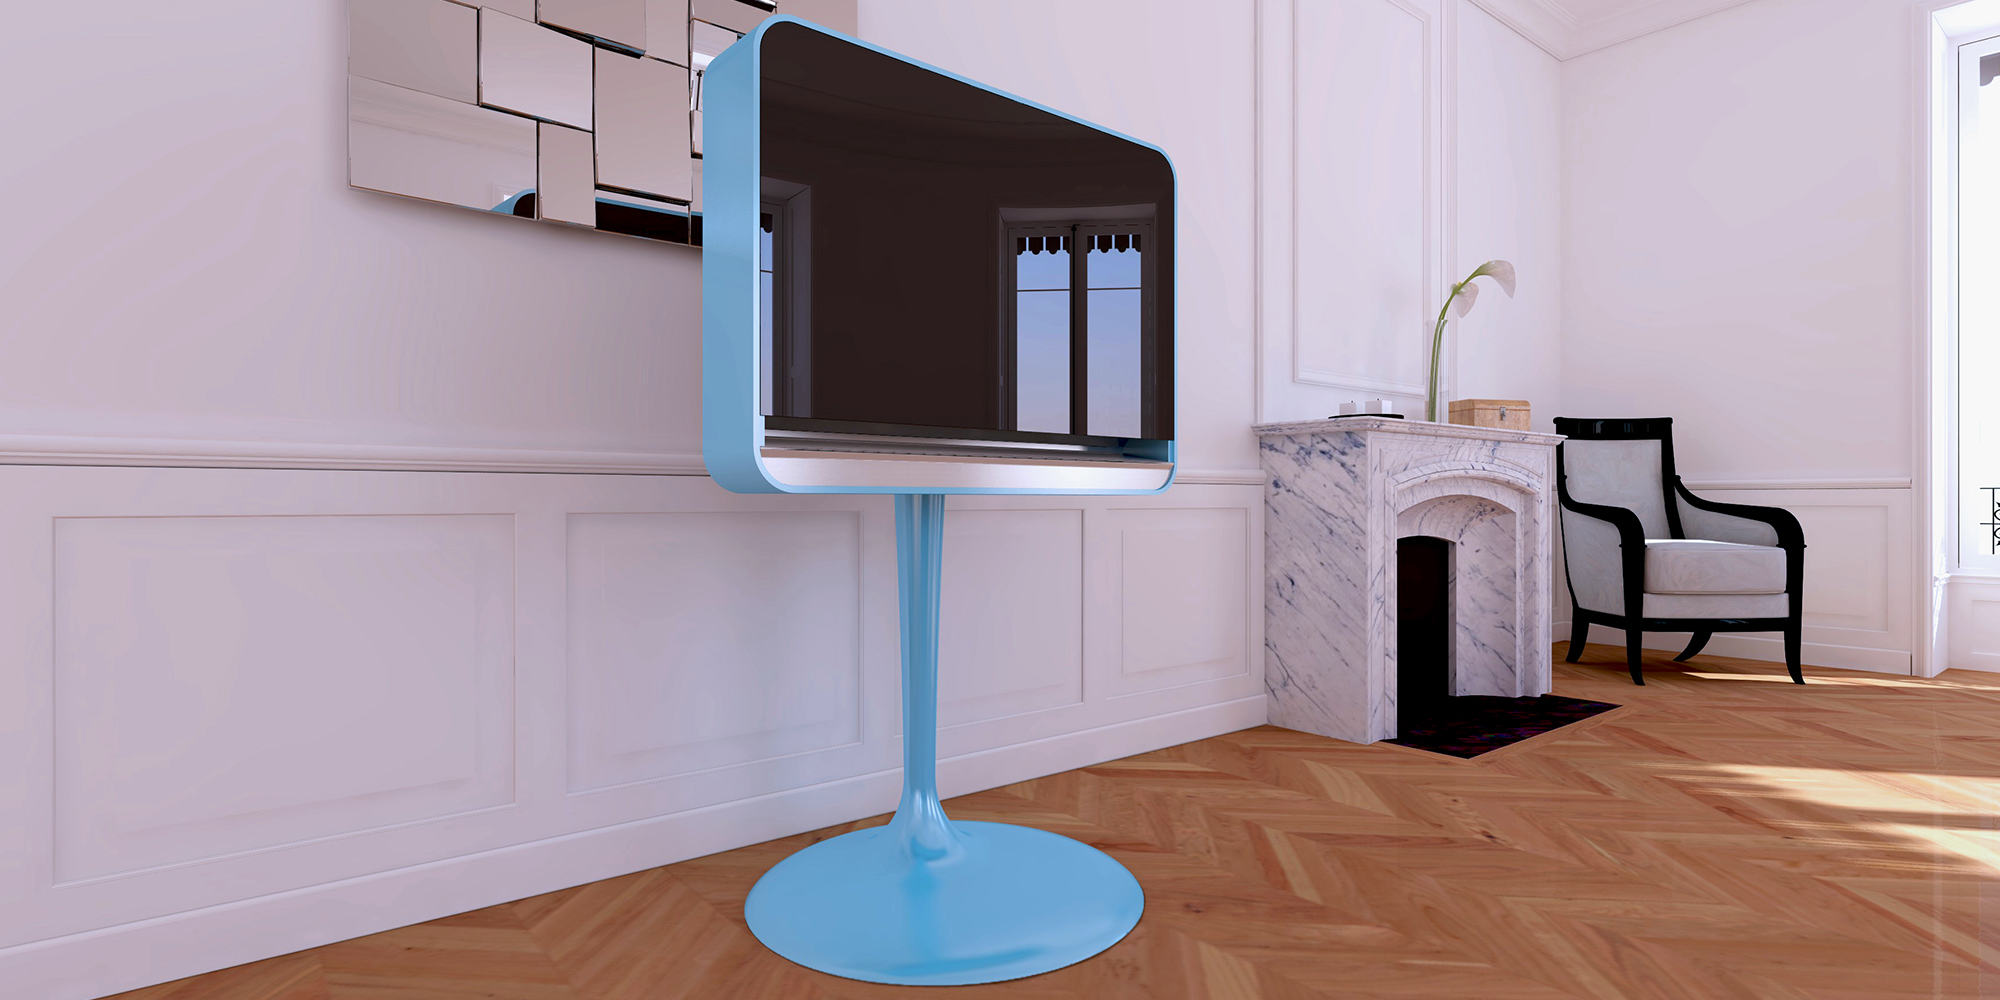 Maison et Objet: Hipolite transforms humble TV into Decorative Object